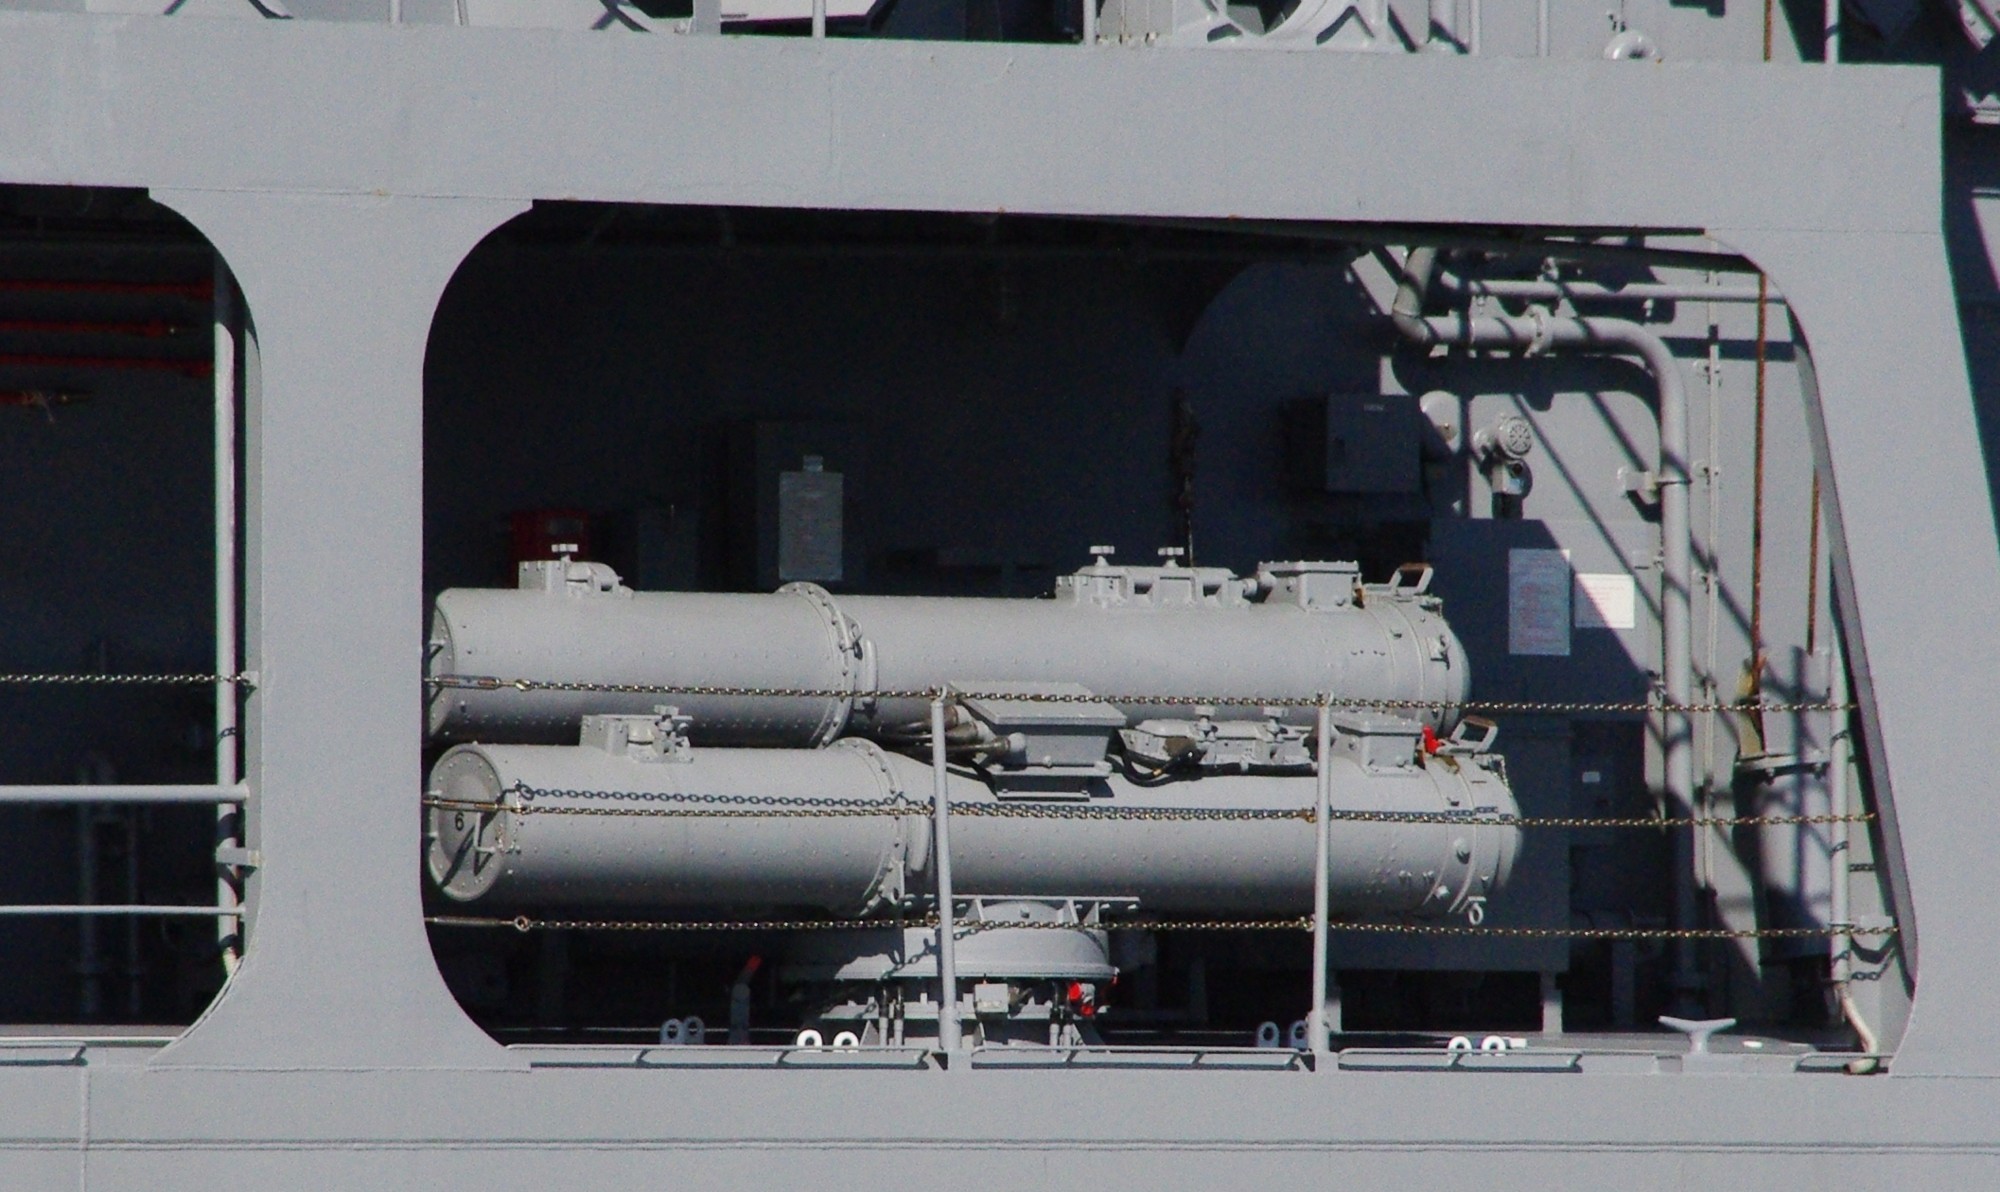 mk-32 torpedo tubes svtt hatsuyuki class destroyer jmsdf hos-301